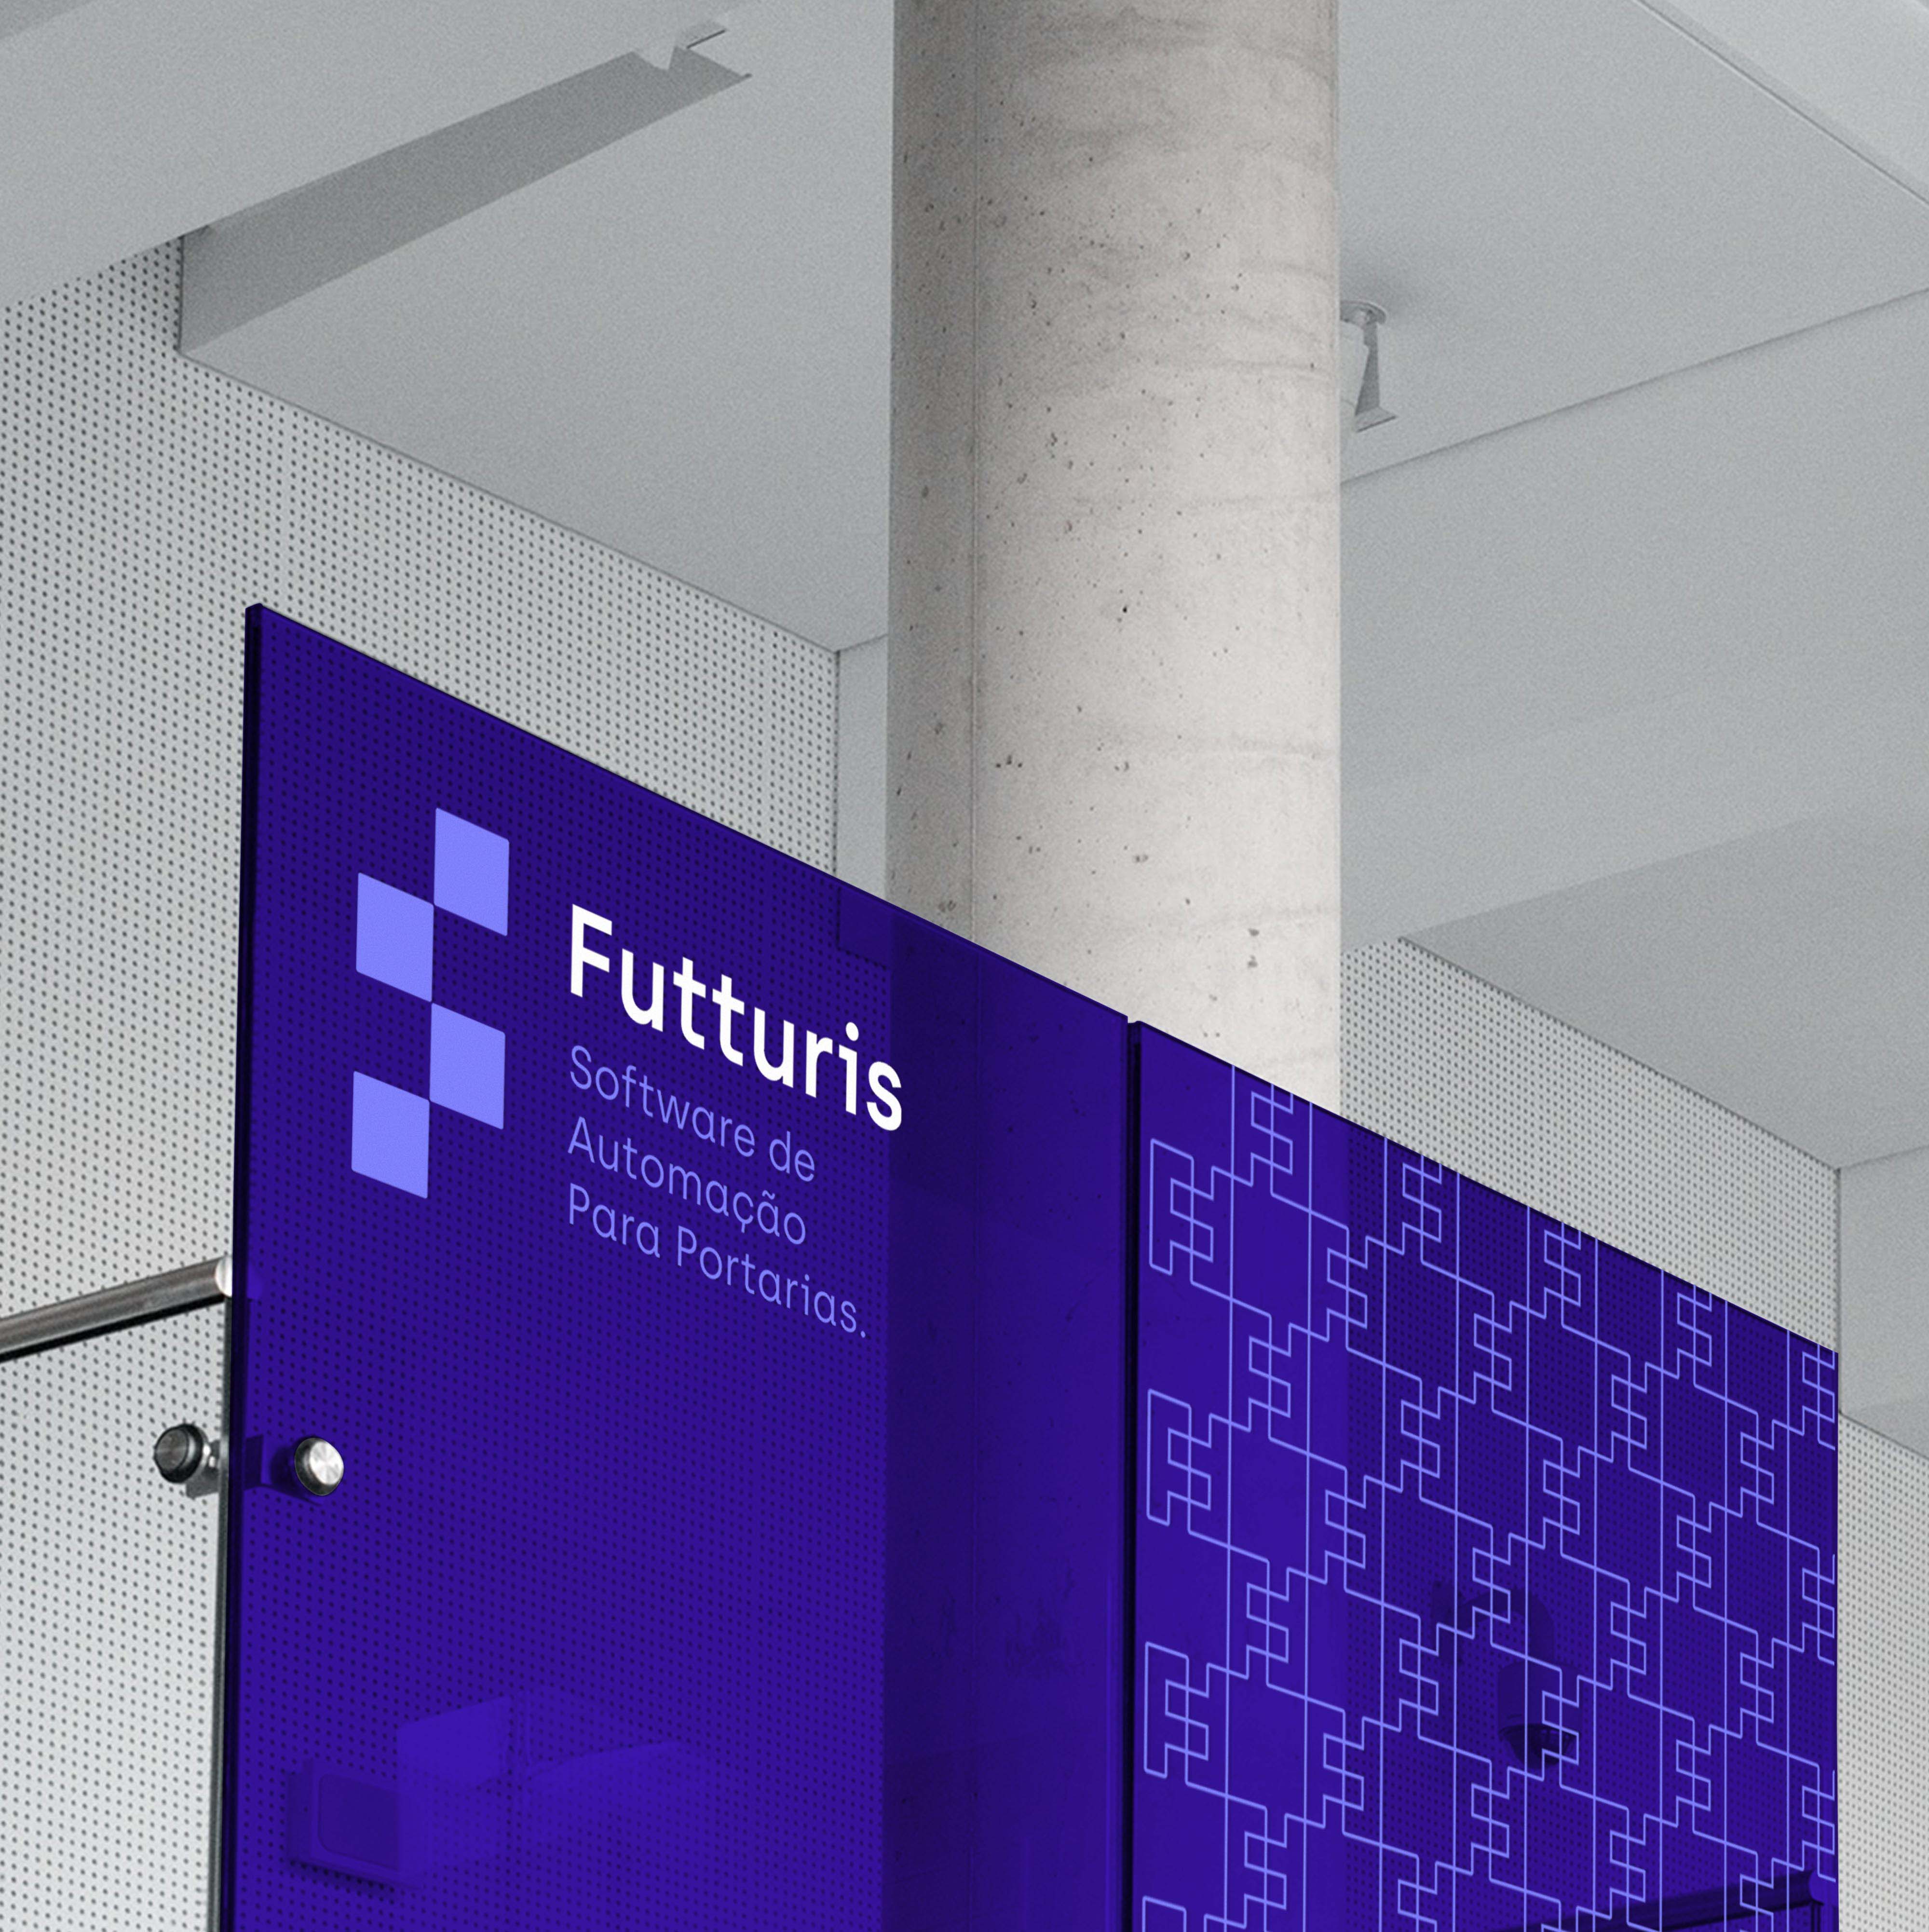 远程监控技术服务商Futturis品牌形象设计